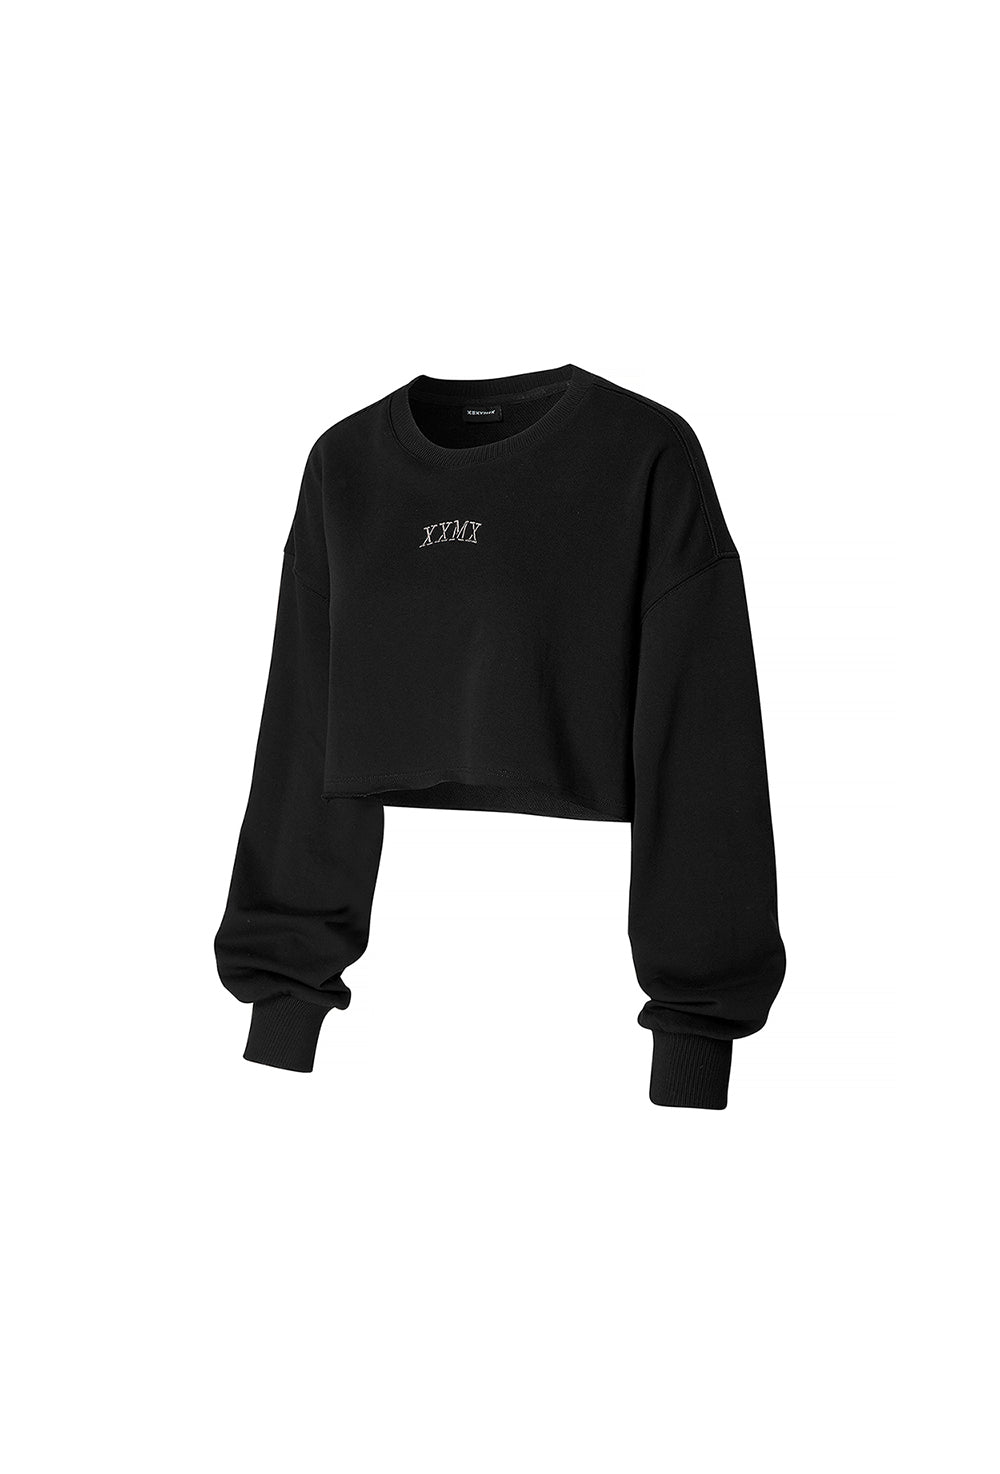 Soft Cotton Daily Crop Sweatshirt - Black